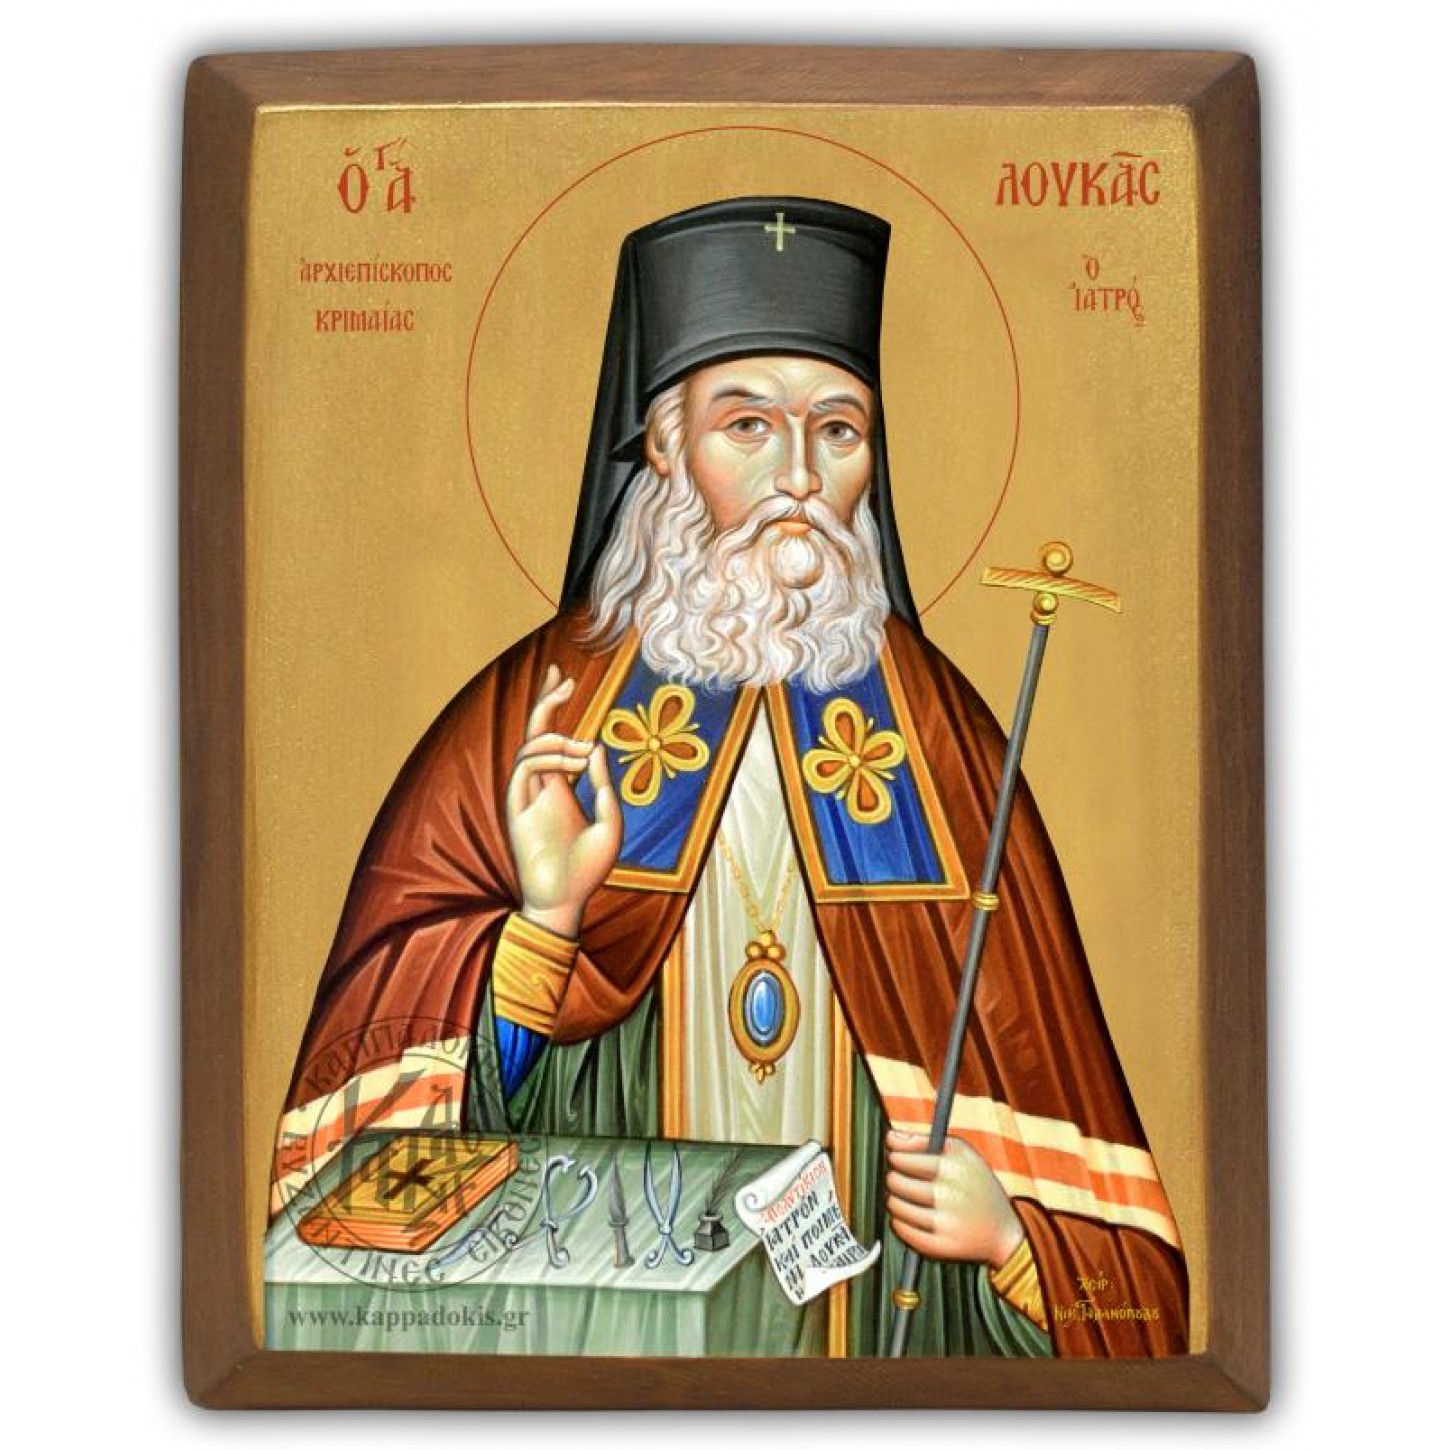 Λουκάς Αρχιεπίσκοπος Κριμαίας